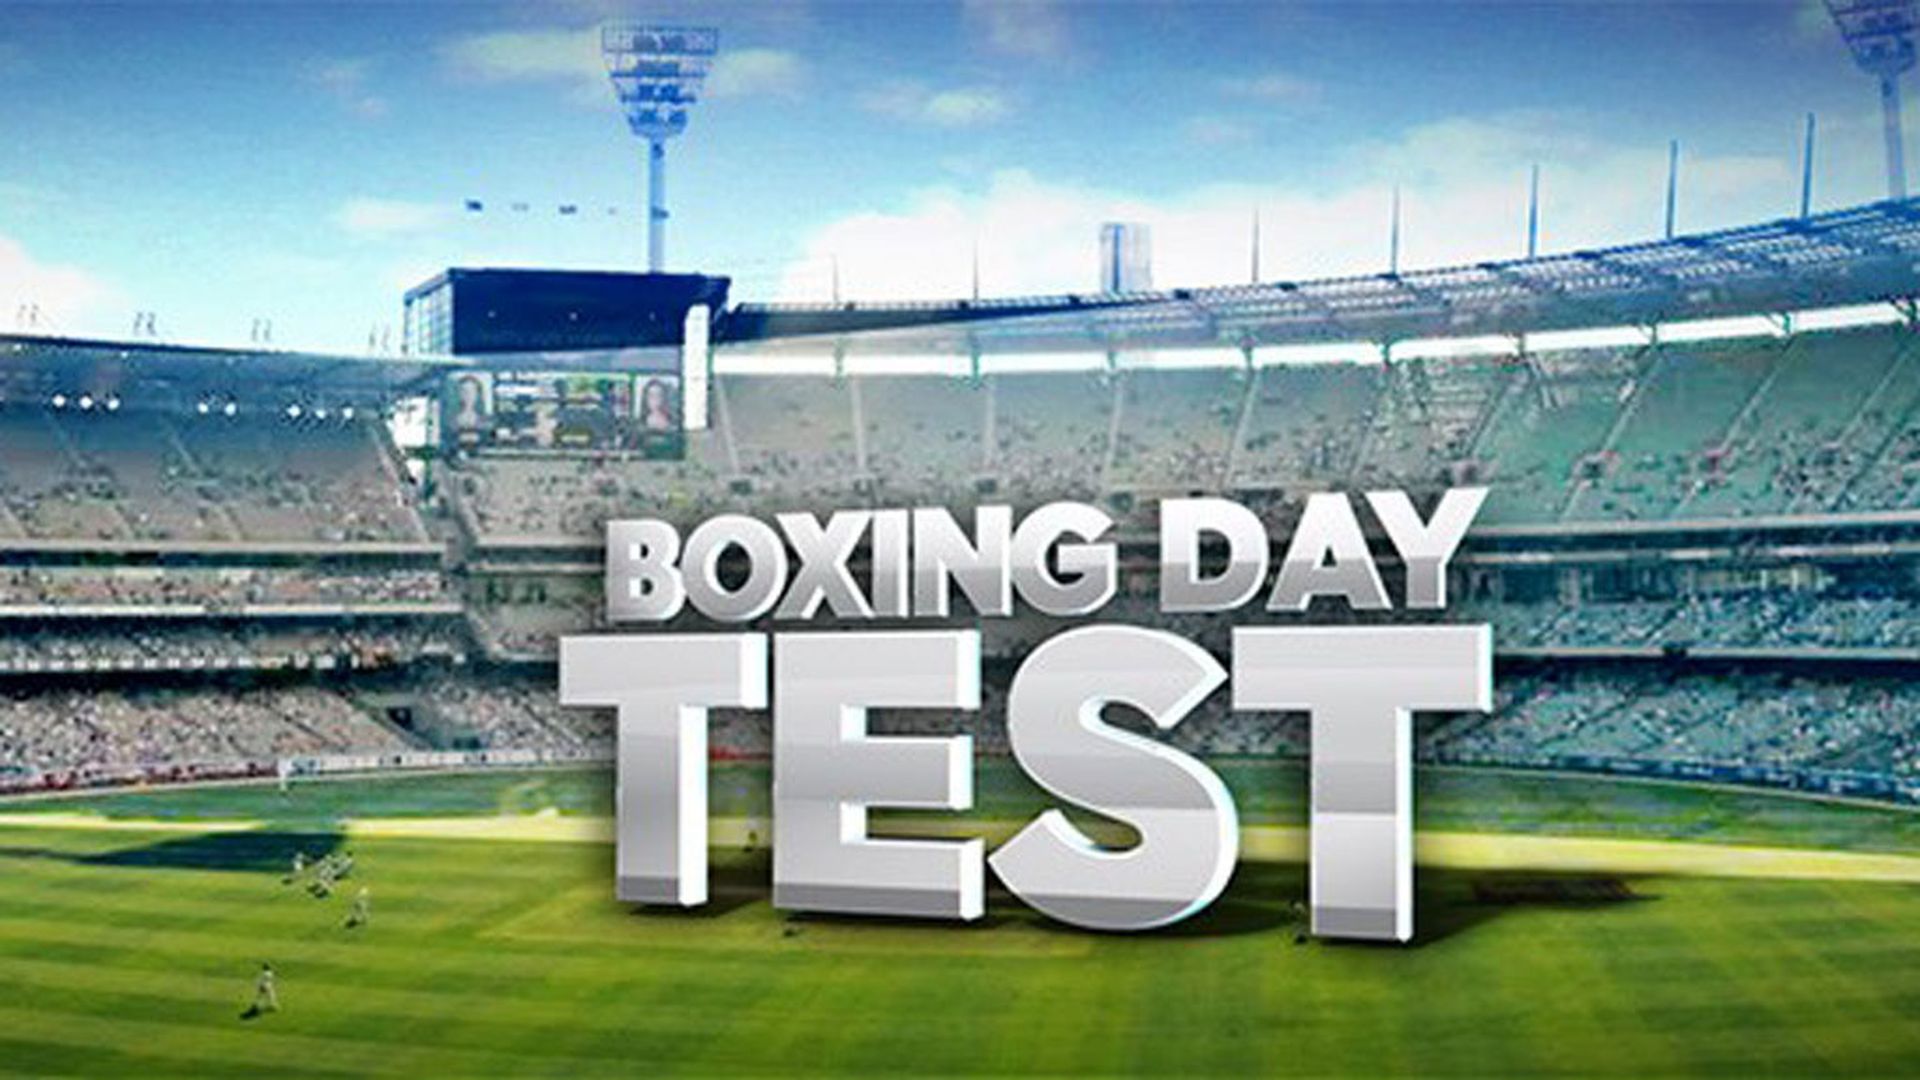 26 दिसंबर को खेले जाने वाले टेस्ट को क्यों कहते हैं बॉक्सिंग डे टेस्ट, जाने इसके पीछे की कहानी 5